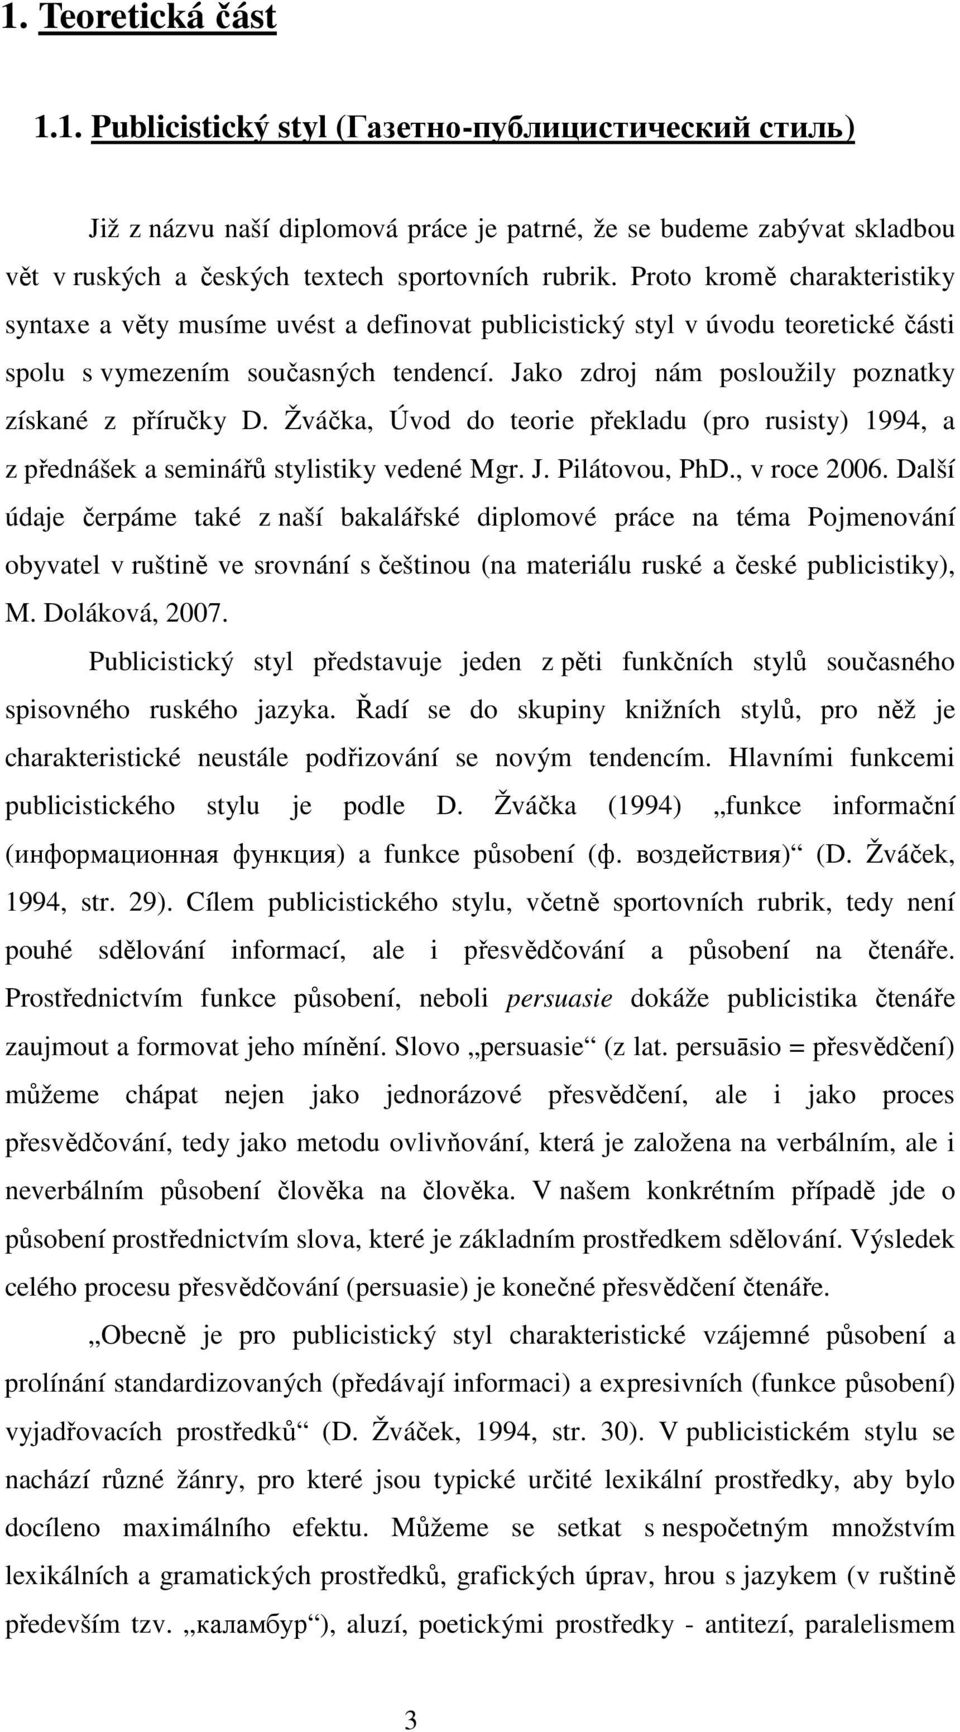 Jako zdroj nám posloužily poznatky získané z příručky D. Žváčka, Úvod do teorie překladu (pro rusisty) 1994, a z přednášek a seminářů stylistiky vedené Mgr. J. Pilátovou, PhD., v roce 2006.